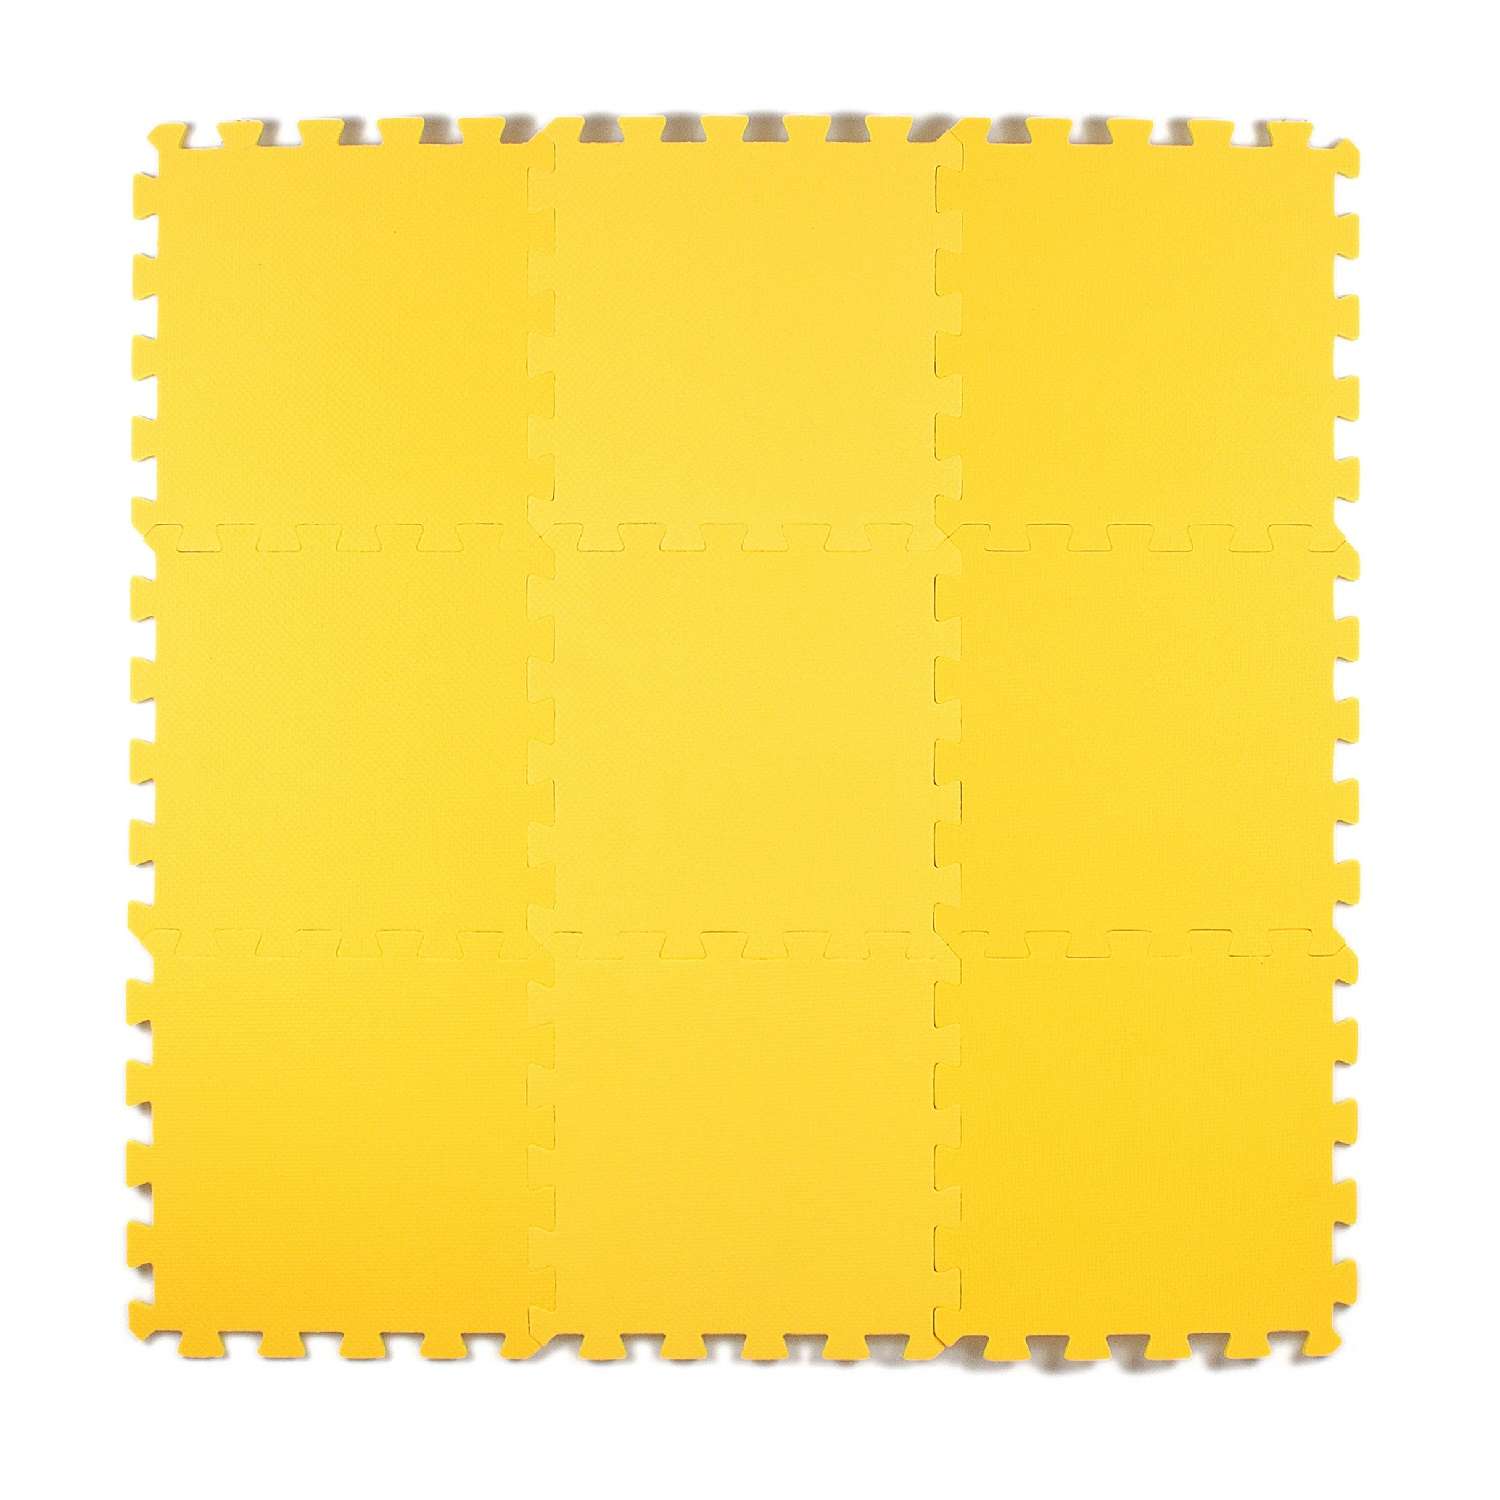 Развивающий детский коврик Eco cover игровой мягкий пол для ползания желтый 33х33 - фото 1